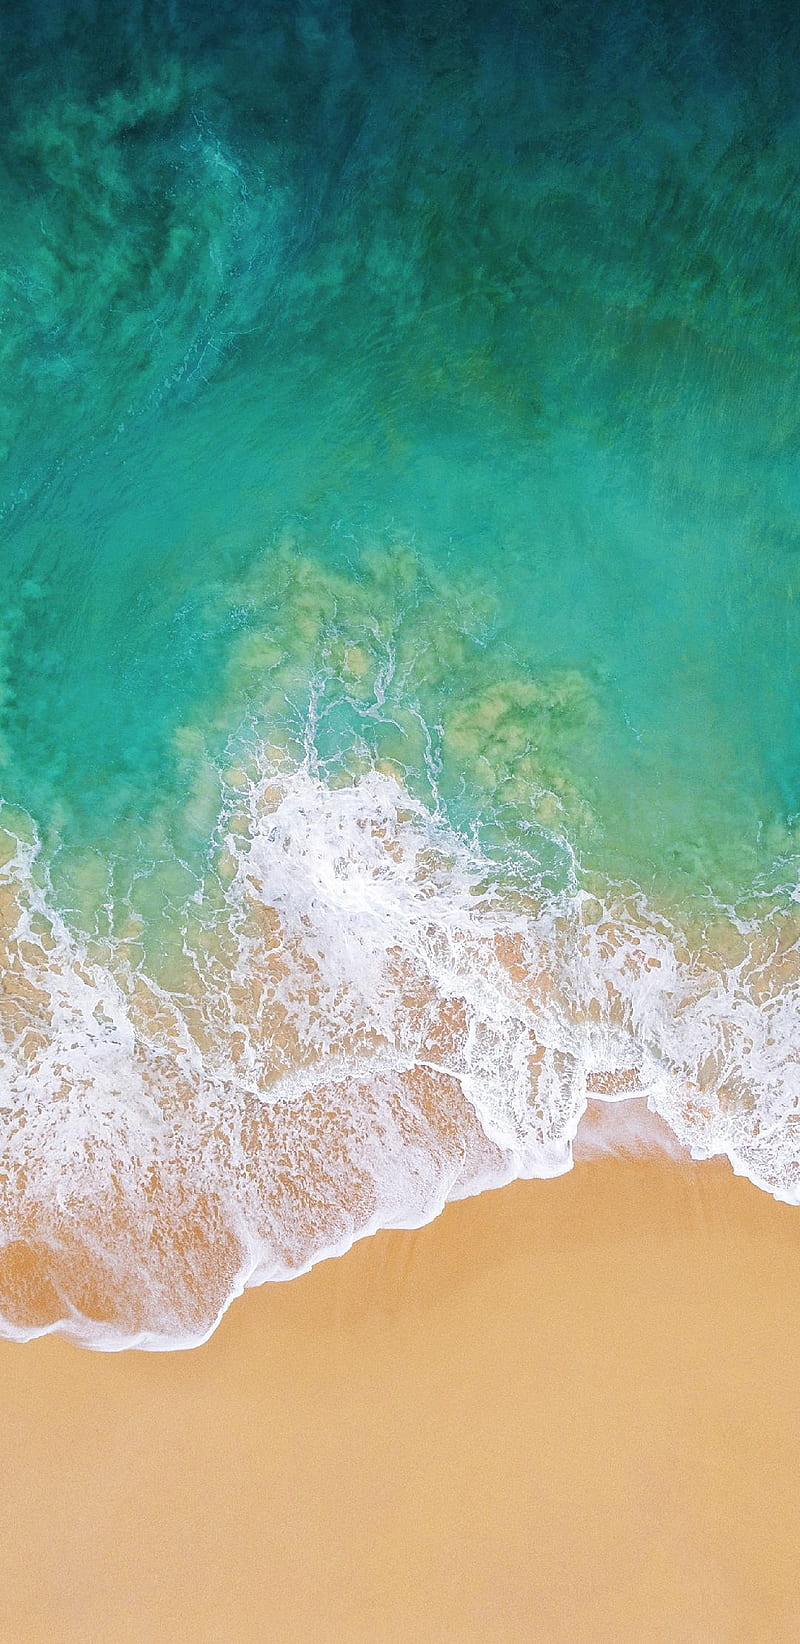 Iphone 8, apple, beach, beaches, coastline, ocean, phone, stoche, tropical, HD phone wallpaper